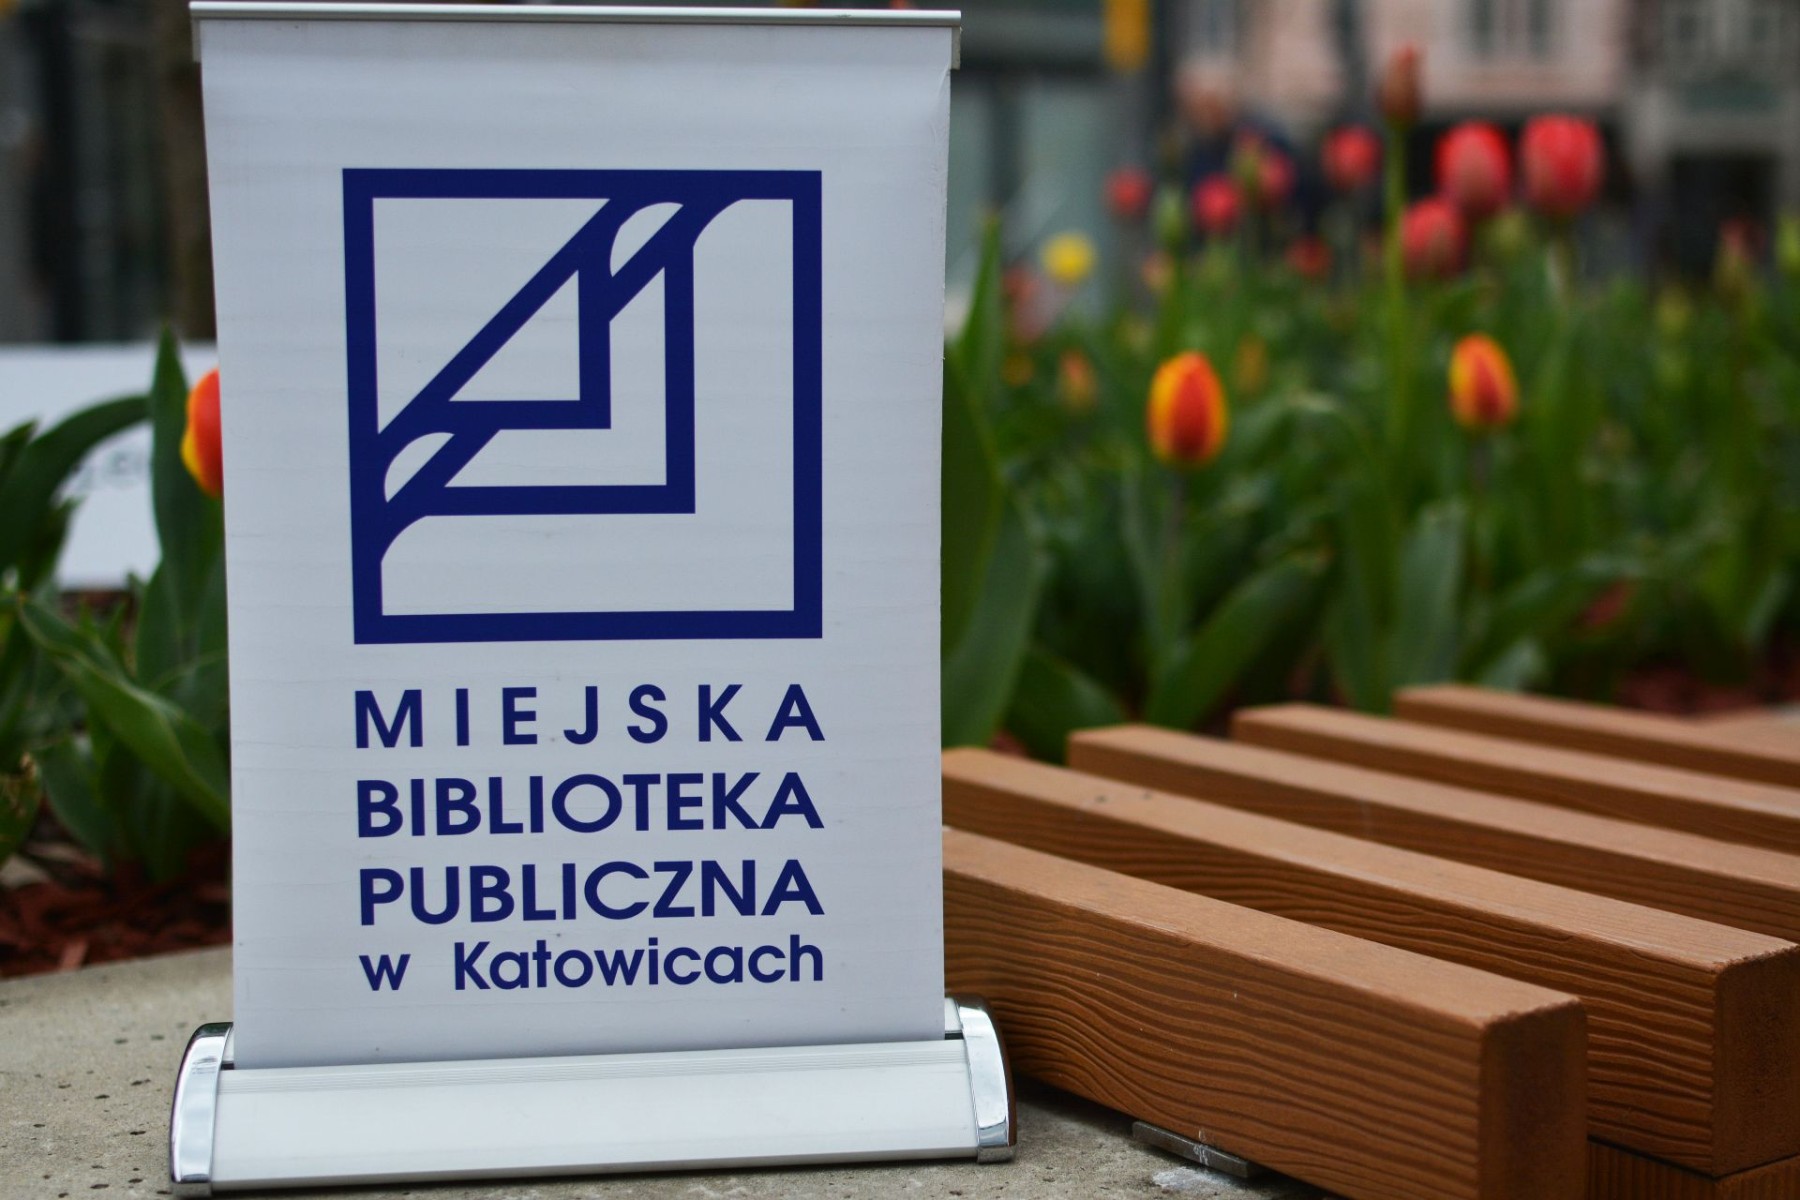 logo biblioteki w katowicach na katowickim rynku przy ławce obok kwiatów